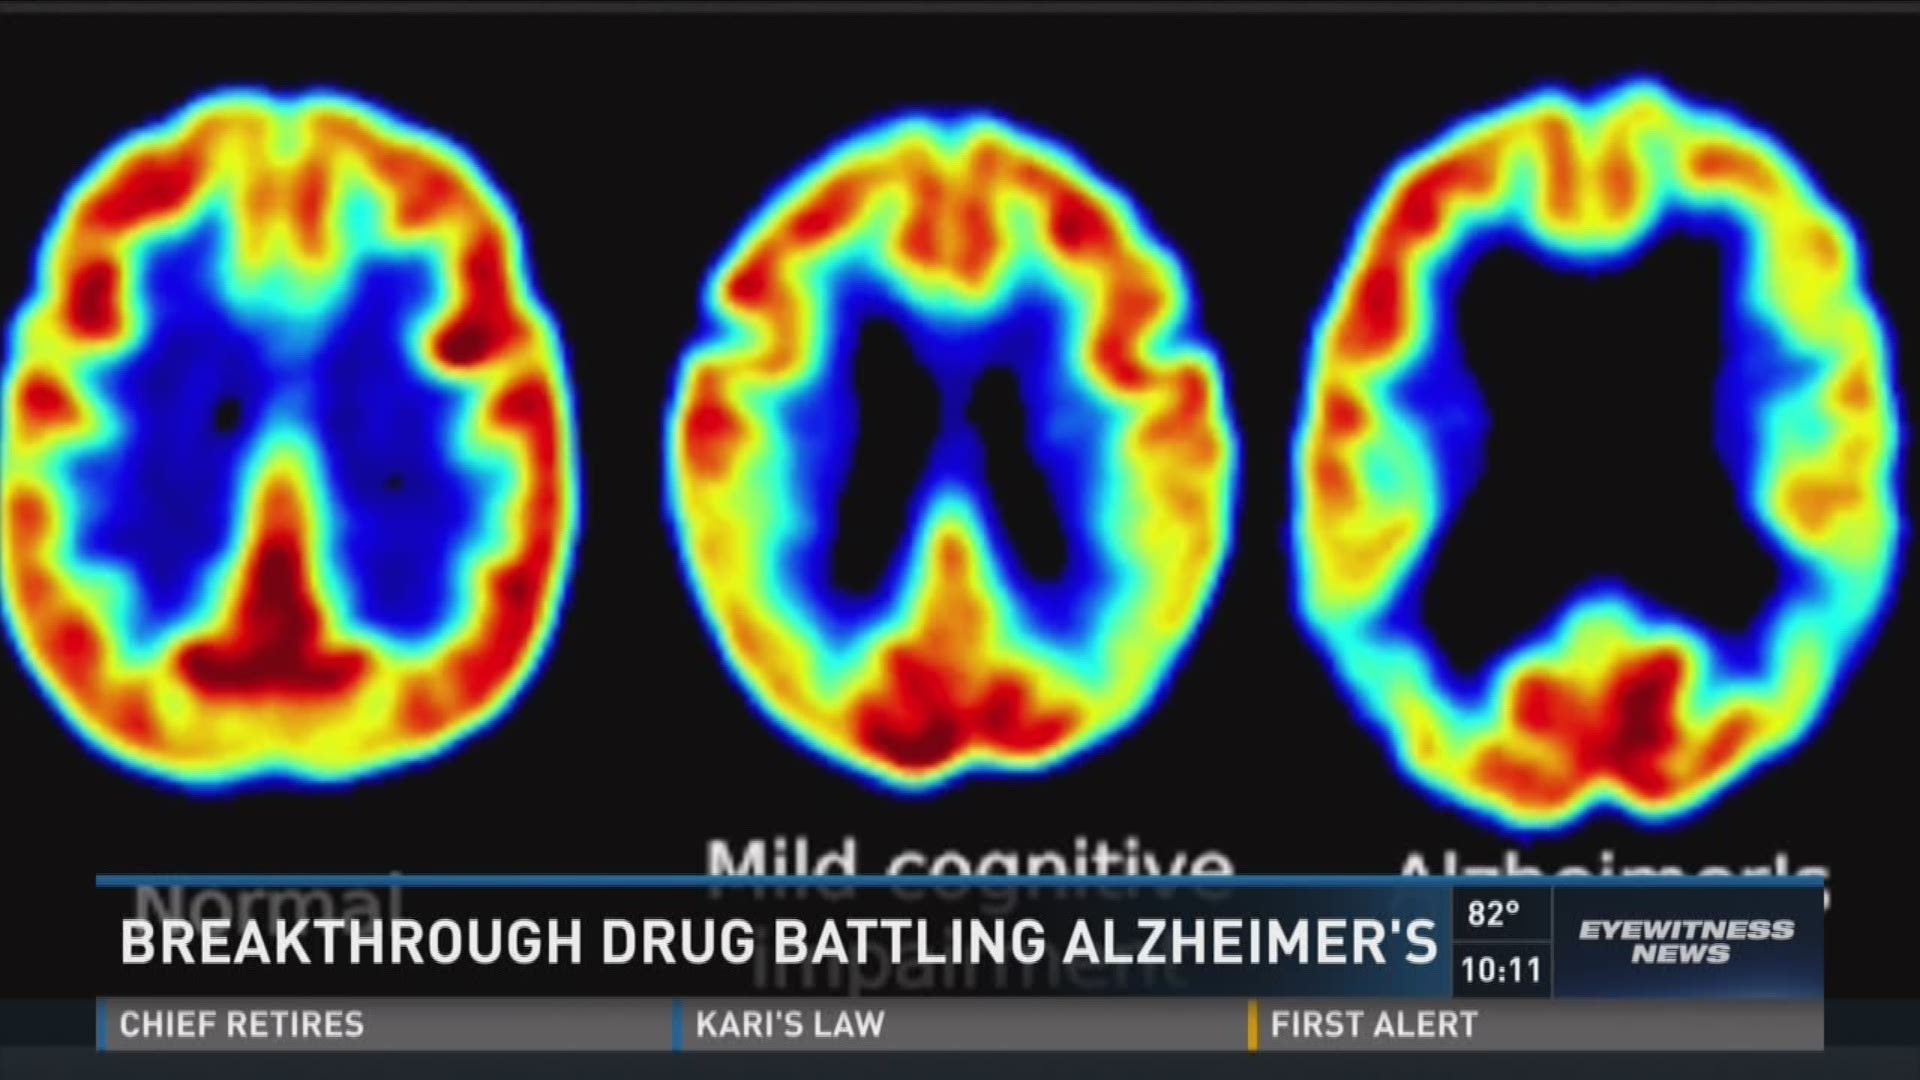 Breakthrough drug battling Alzheimer's